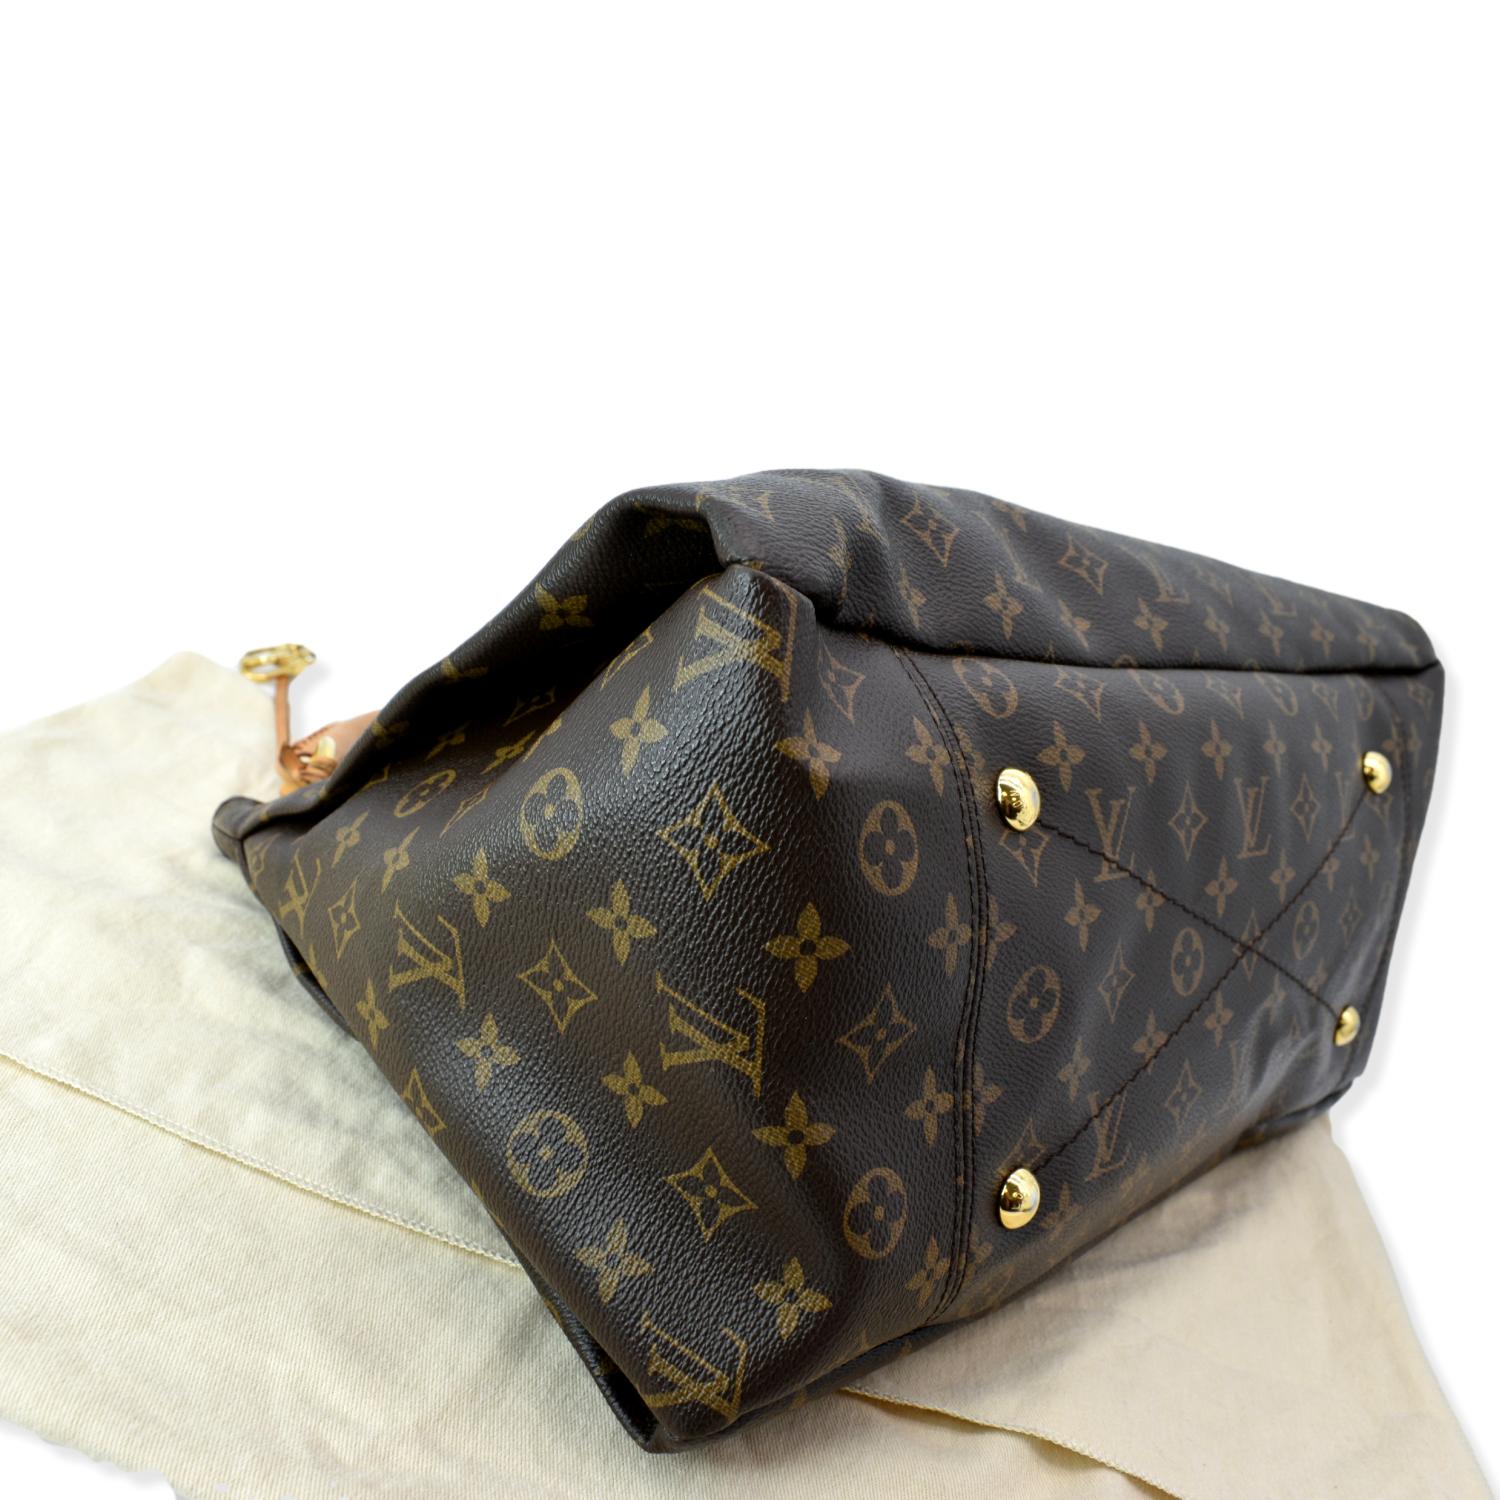 Artsy cloth handbag Louis Vuitton Brown in Cloth - 30457577